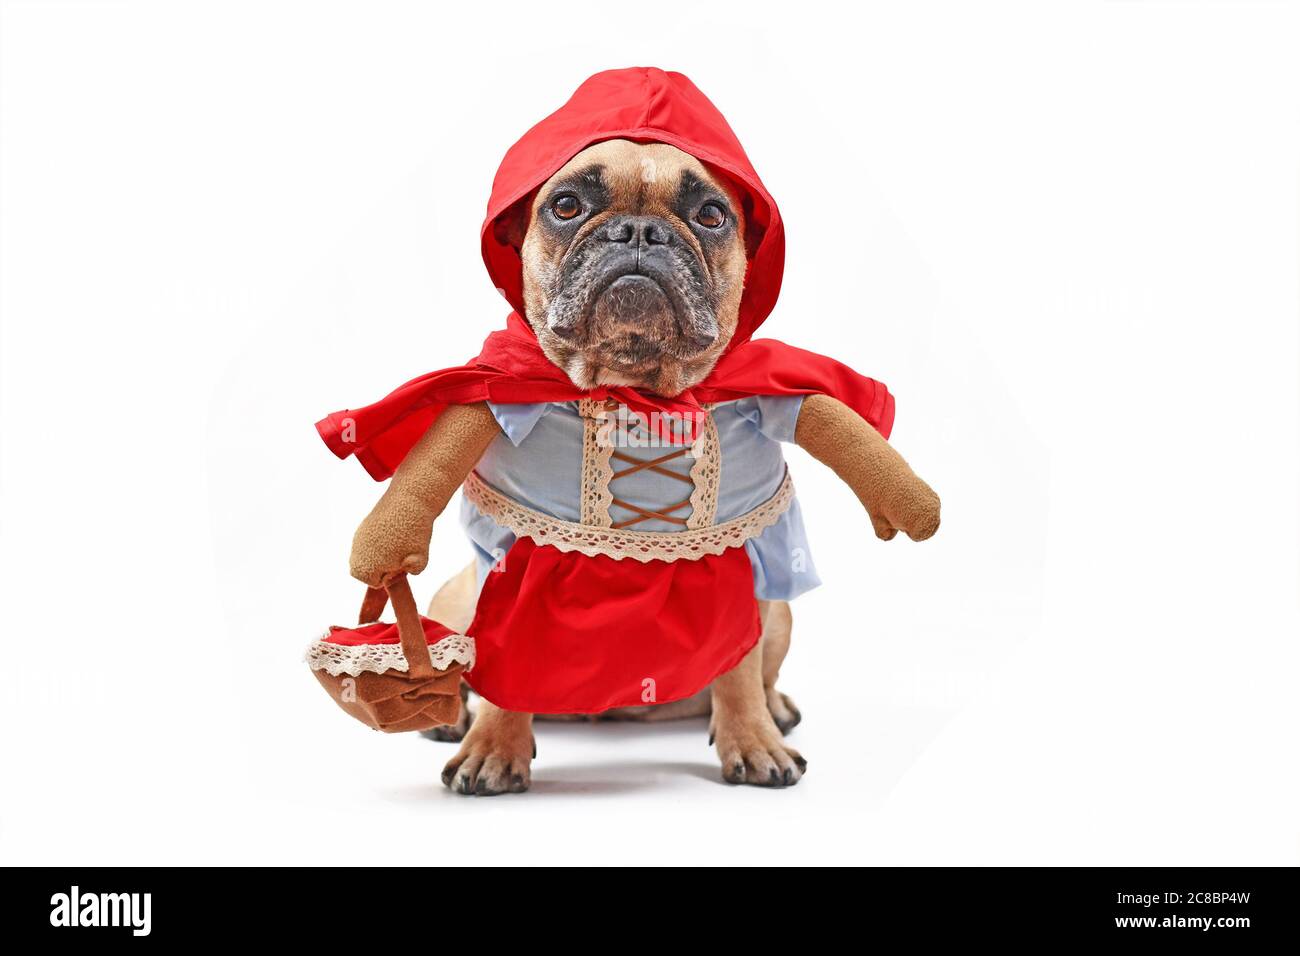 Bulldog francese vestito come personaggio fiabesco Little Red Riding Hood con costume da cane a corpo pieno con armi finte che indossa cestino su sfondo bianco Foto Stock